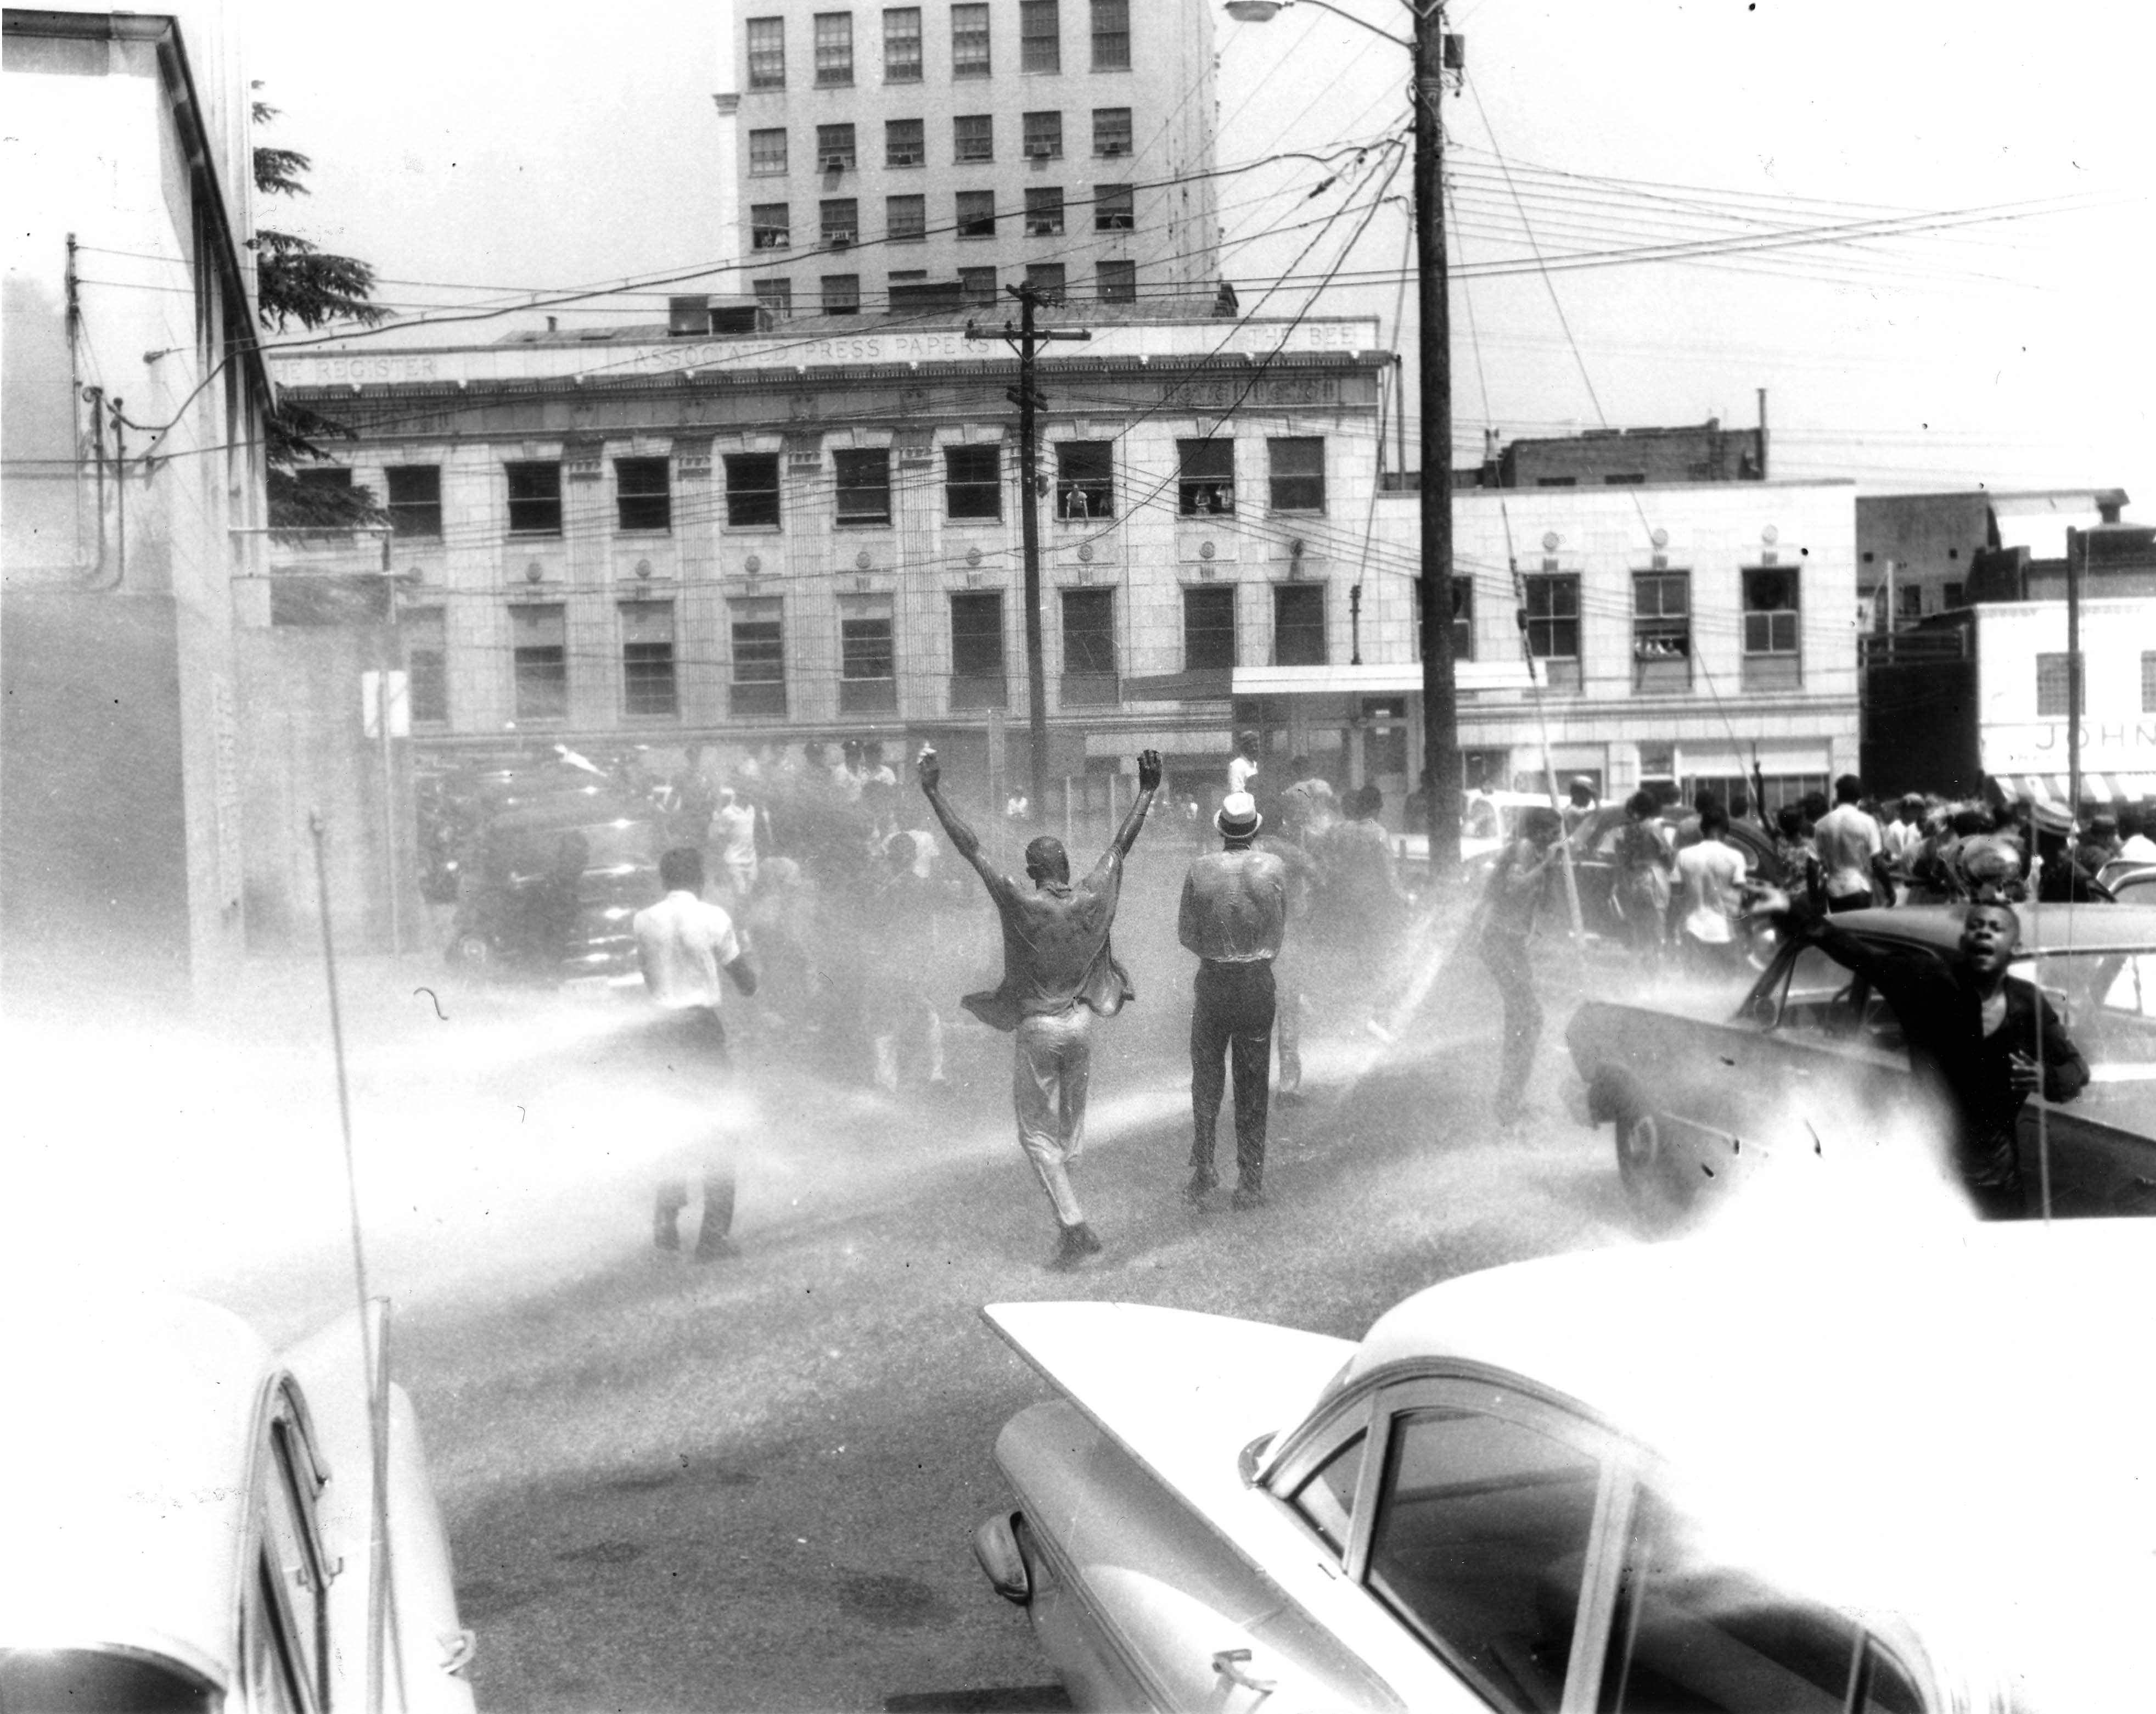 The Danville Civil Rights Movement, 1945-1975